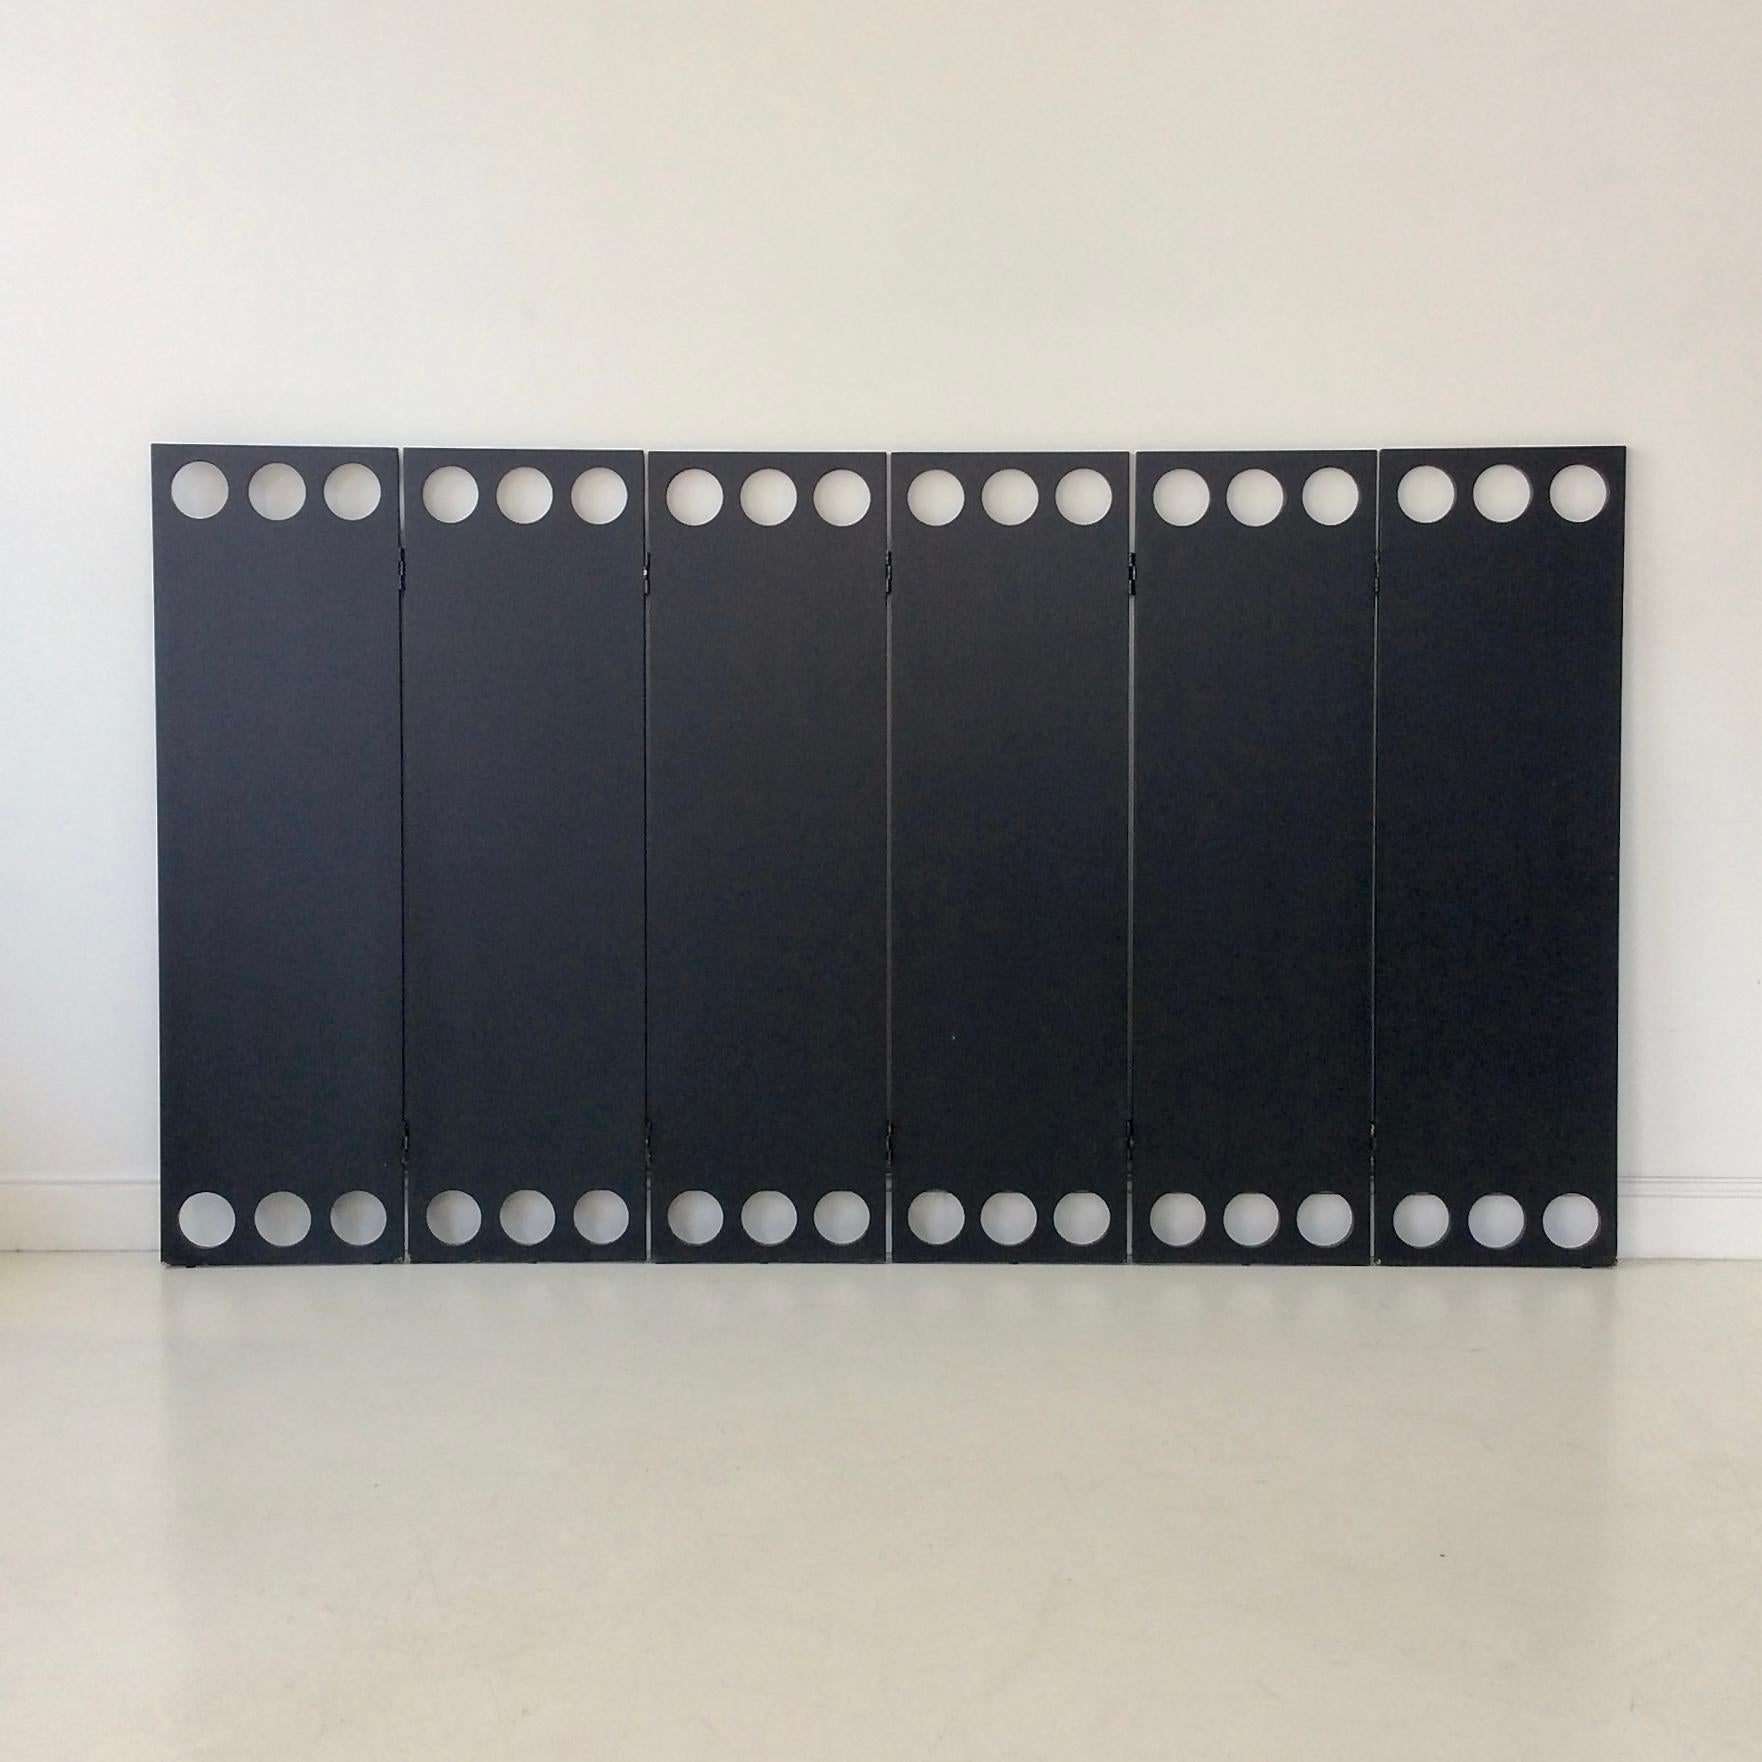 French Garouste et Bonetti Rare Black Screen for Christian Lacroix, 1987, France. For Sale